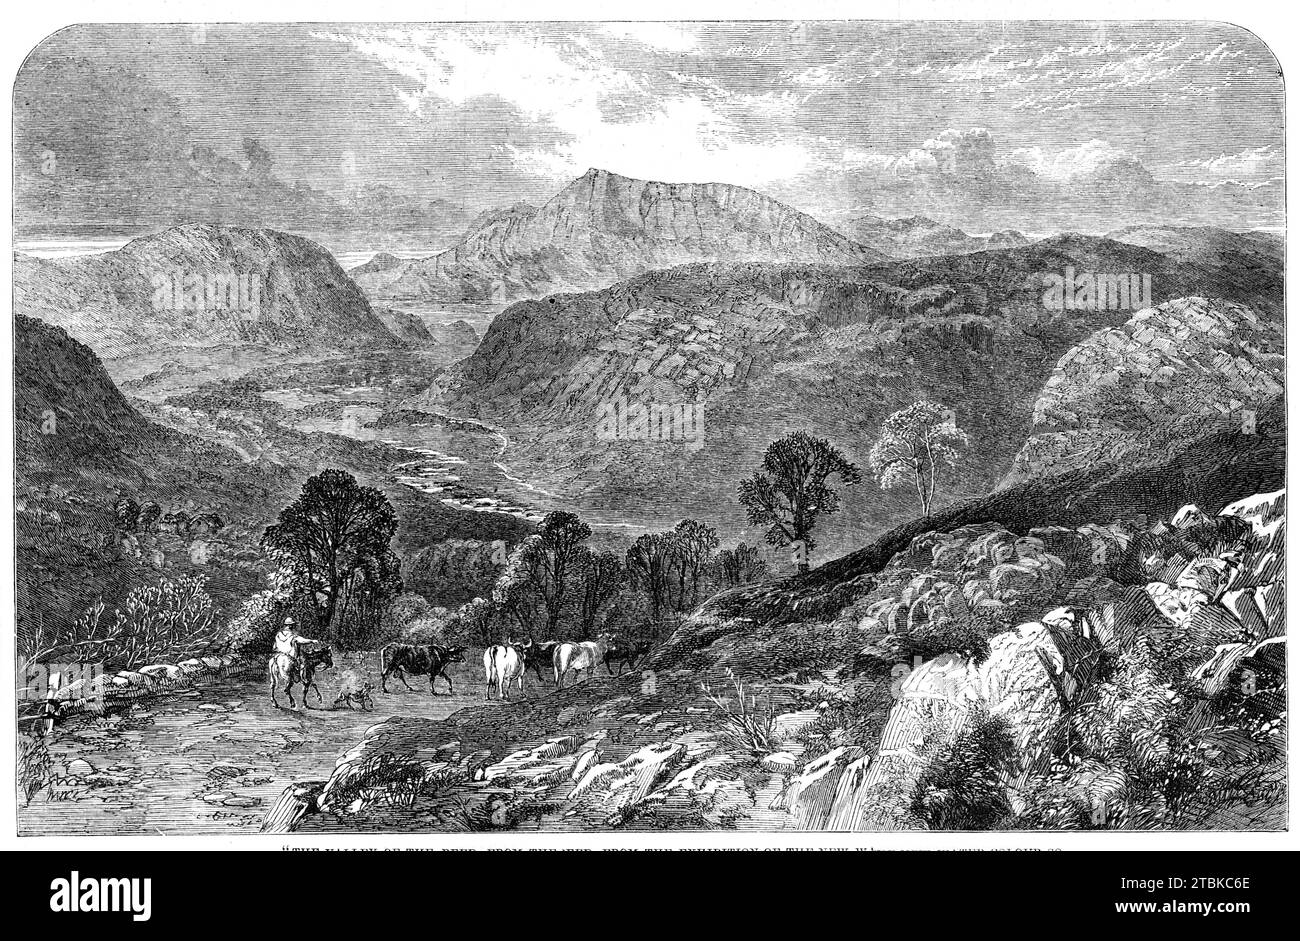 The Valley of the Lledr, von J. C. Reed, aus der Ausstellung der neuen Water-Colour Society, 1861. Gravur von einem Gemälde. "Die Anwendung der Aquarellmalerei zur Verwirklichung der größten Naturmerkmale wird in dieser Landschaft, die an den Wänden der Neuen Wasserfarbengesellschaft ausgestellt wurde, erfolgreich gezeigt. Die riesige, zerbrochene Bergkette, deren Granitoberfläche teilweise mit dünnem Kraut bedeckt ist, wird mit bewundernswerter Wahrheit dargestellt, sowohl was die Textur als auch die Farbe betrifft. Im Tal unten, das sich wie ein Silberfaden windet, befindet sich ein kleiner Bachlauf. Im Vordergrund Stockfoto